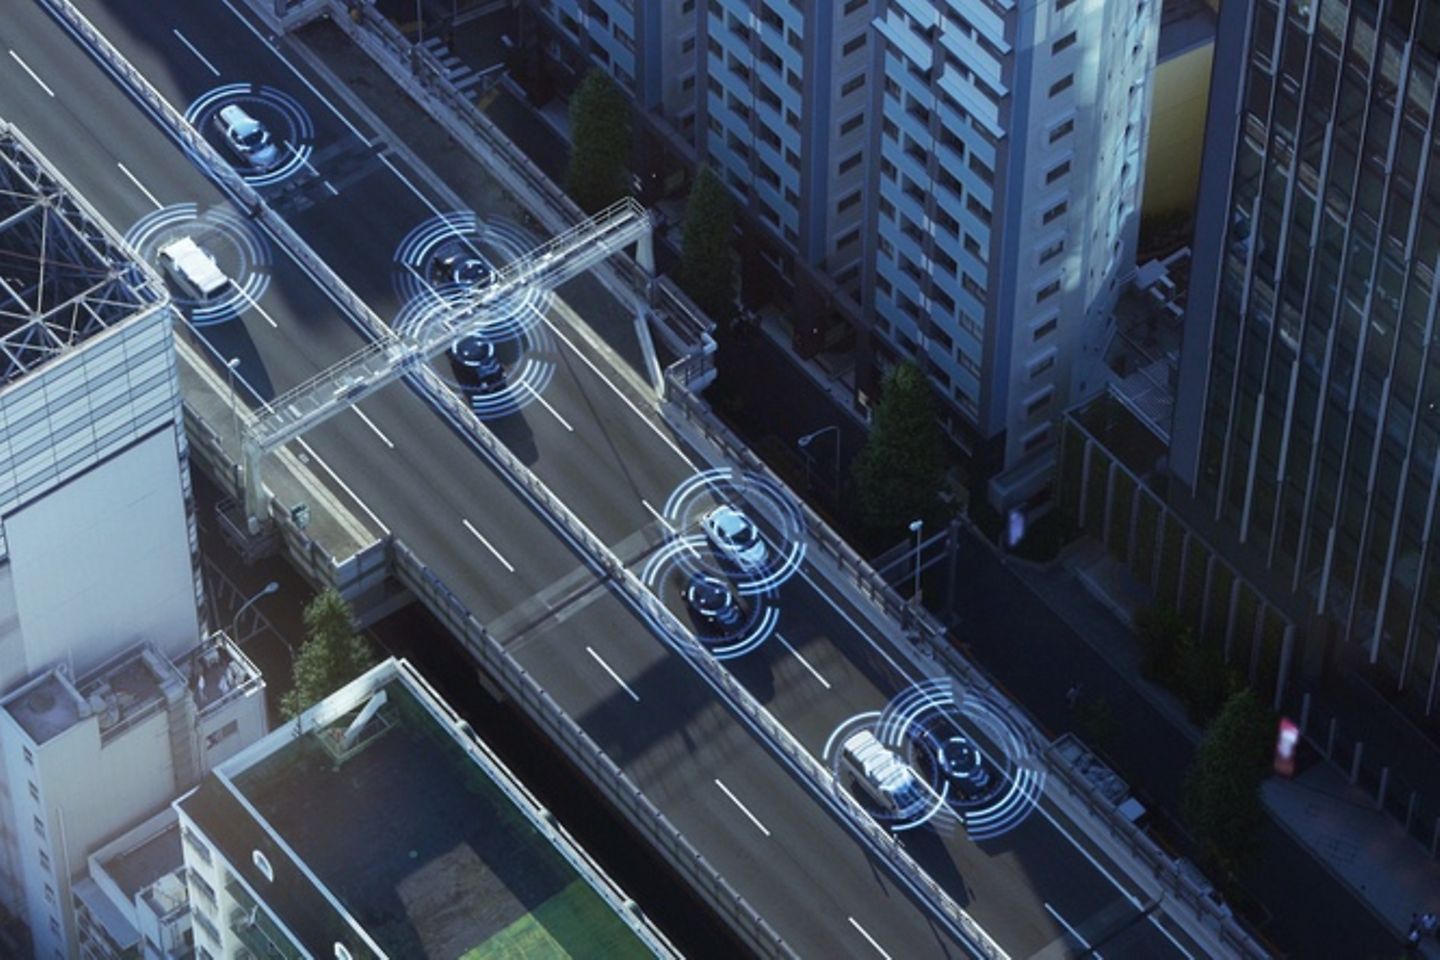 Vue aérienne d’une rue dans laquelle circulent des voitures entourées de rayons de réseau.